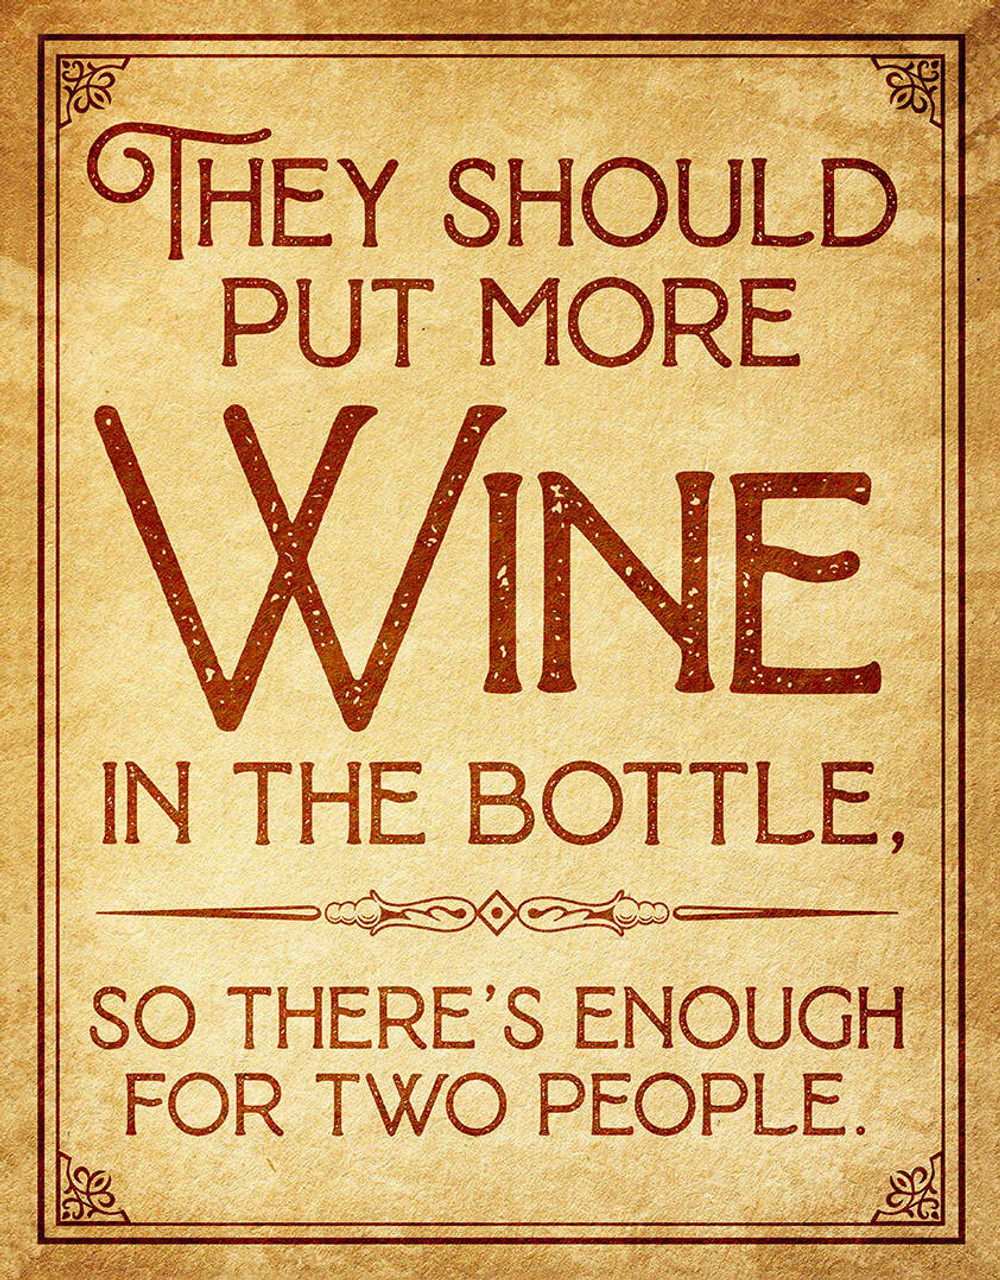 ƥ  More Wine in Bottle DE-MS2687